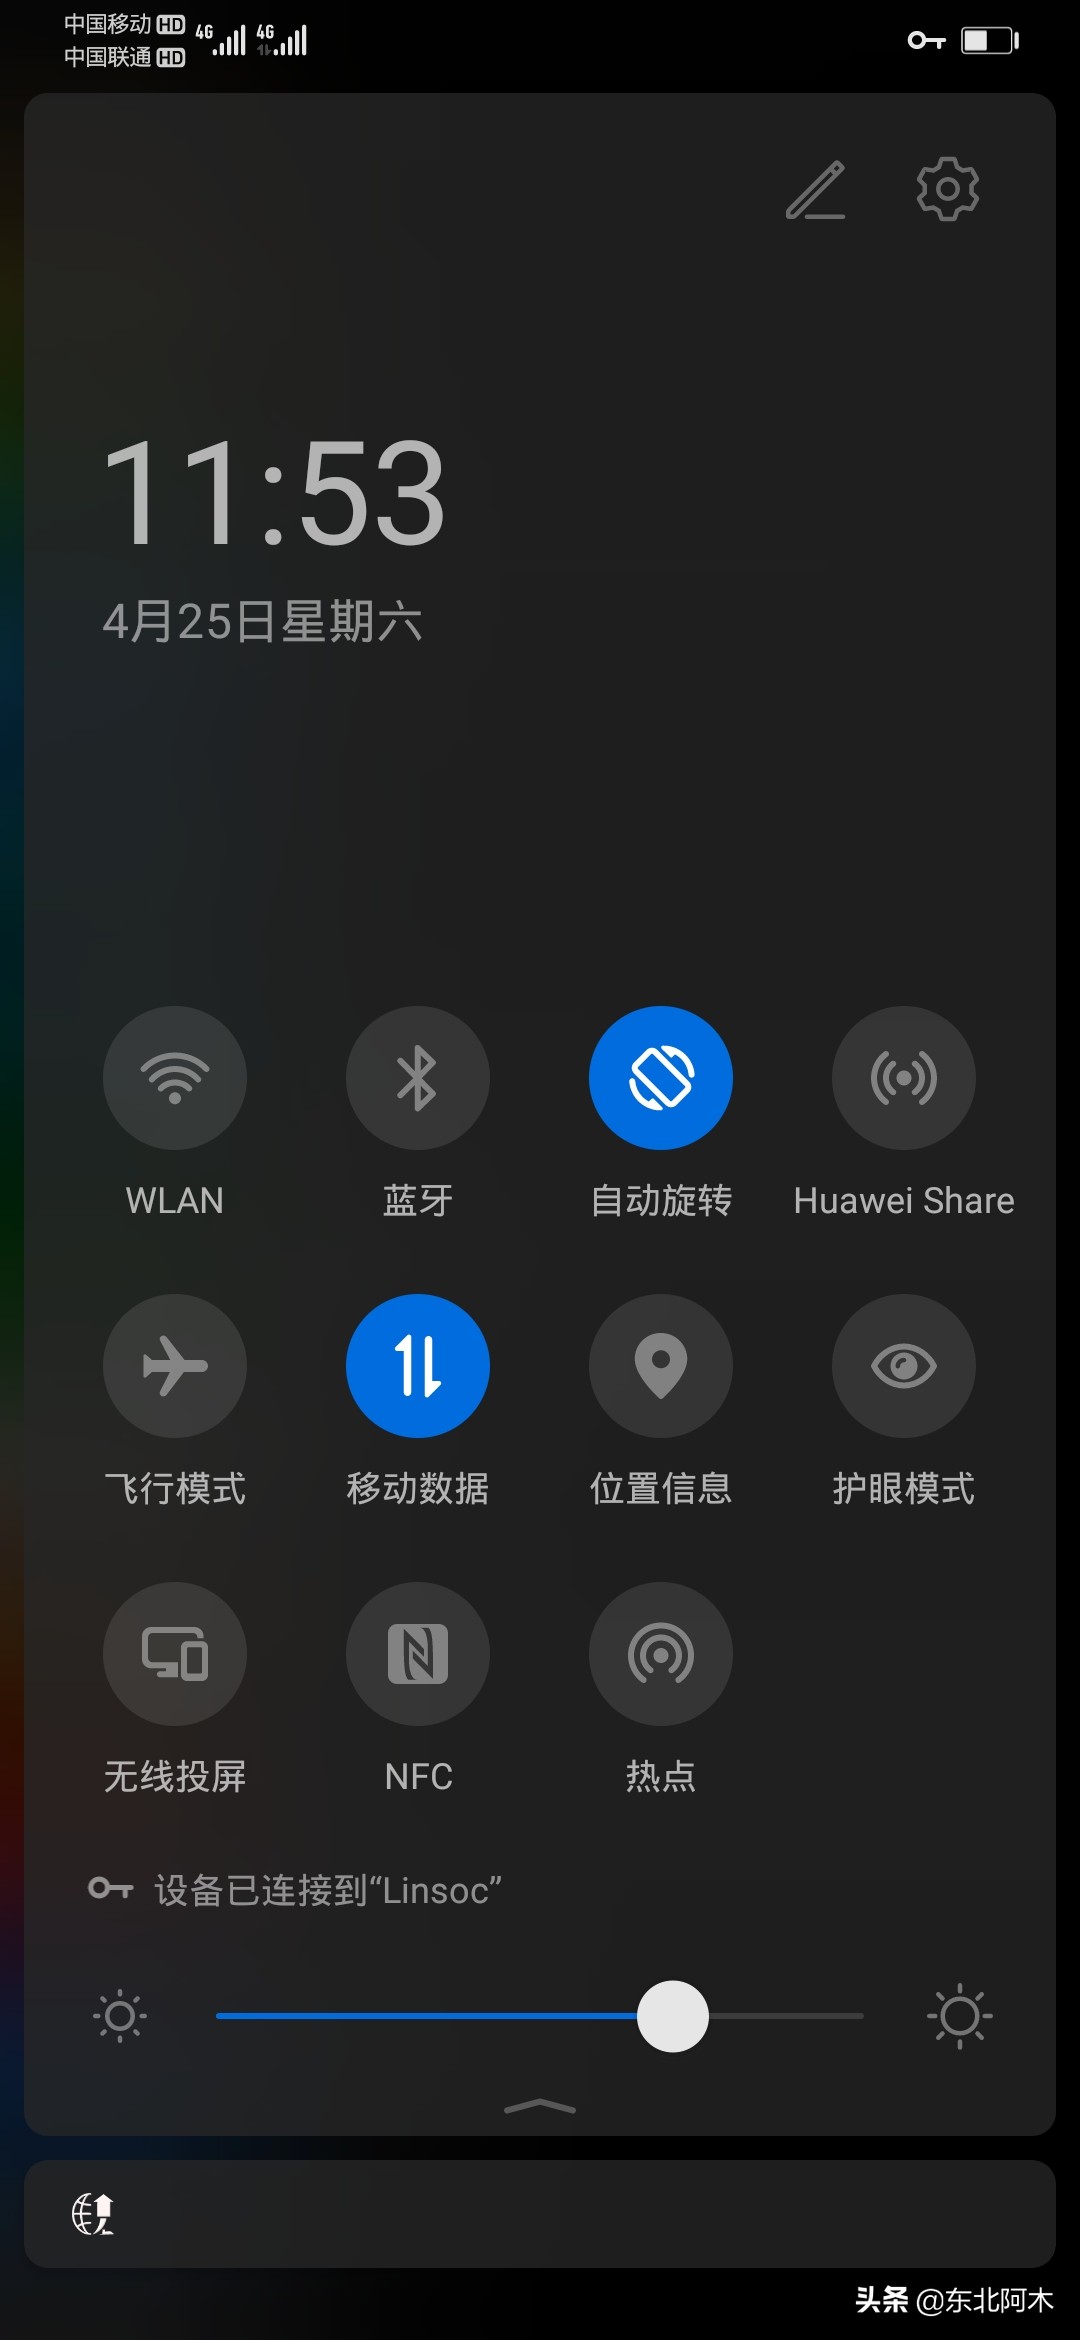 【评测】Huawei nova 7i   4摄 ,800 万像素 + 机身设计靓